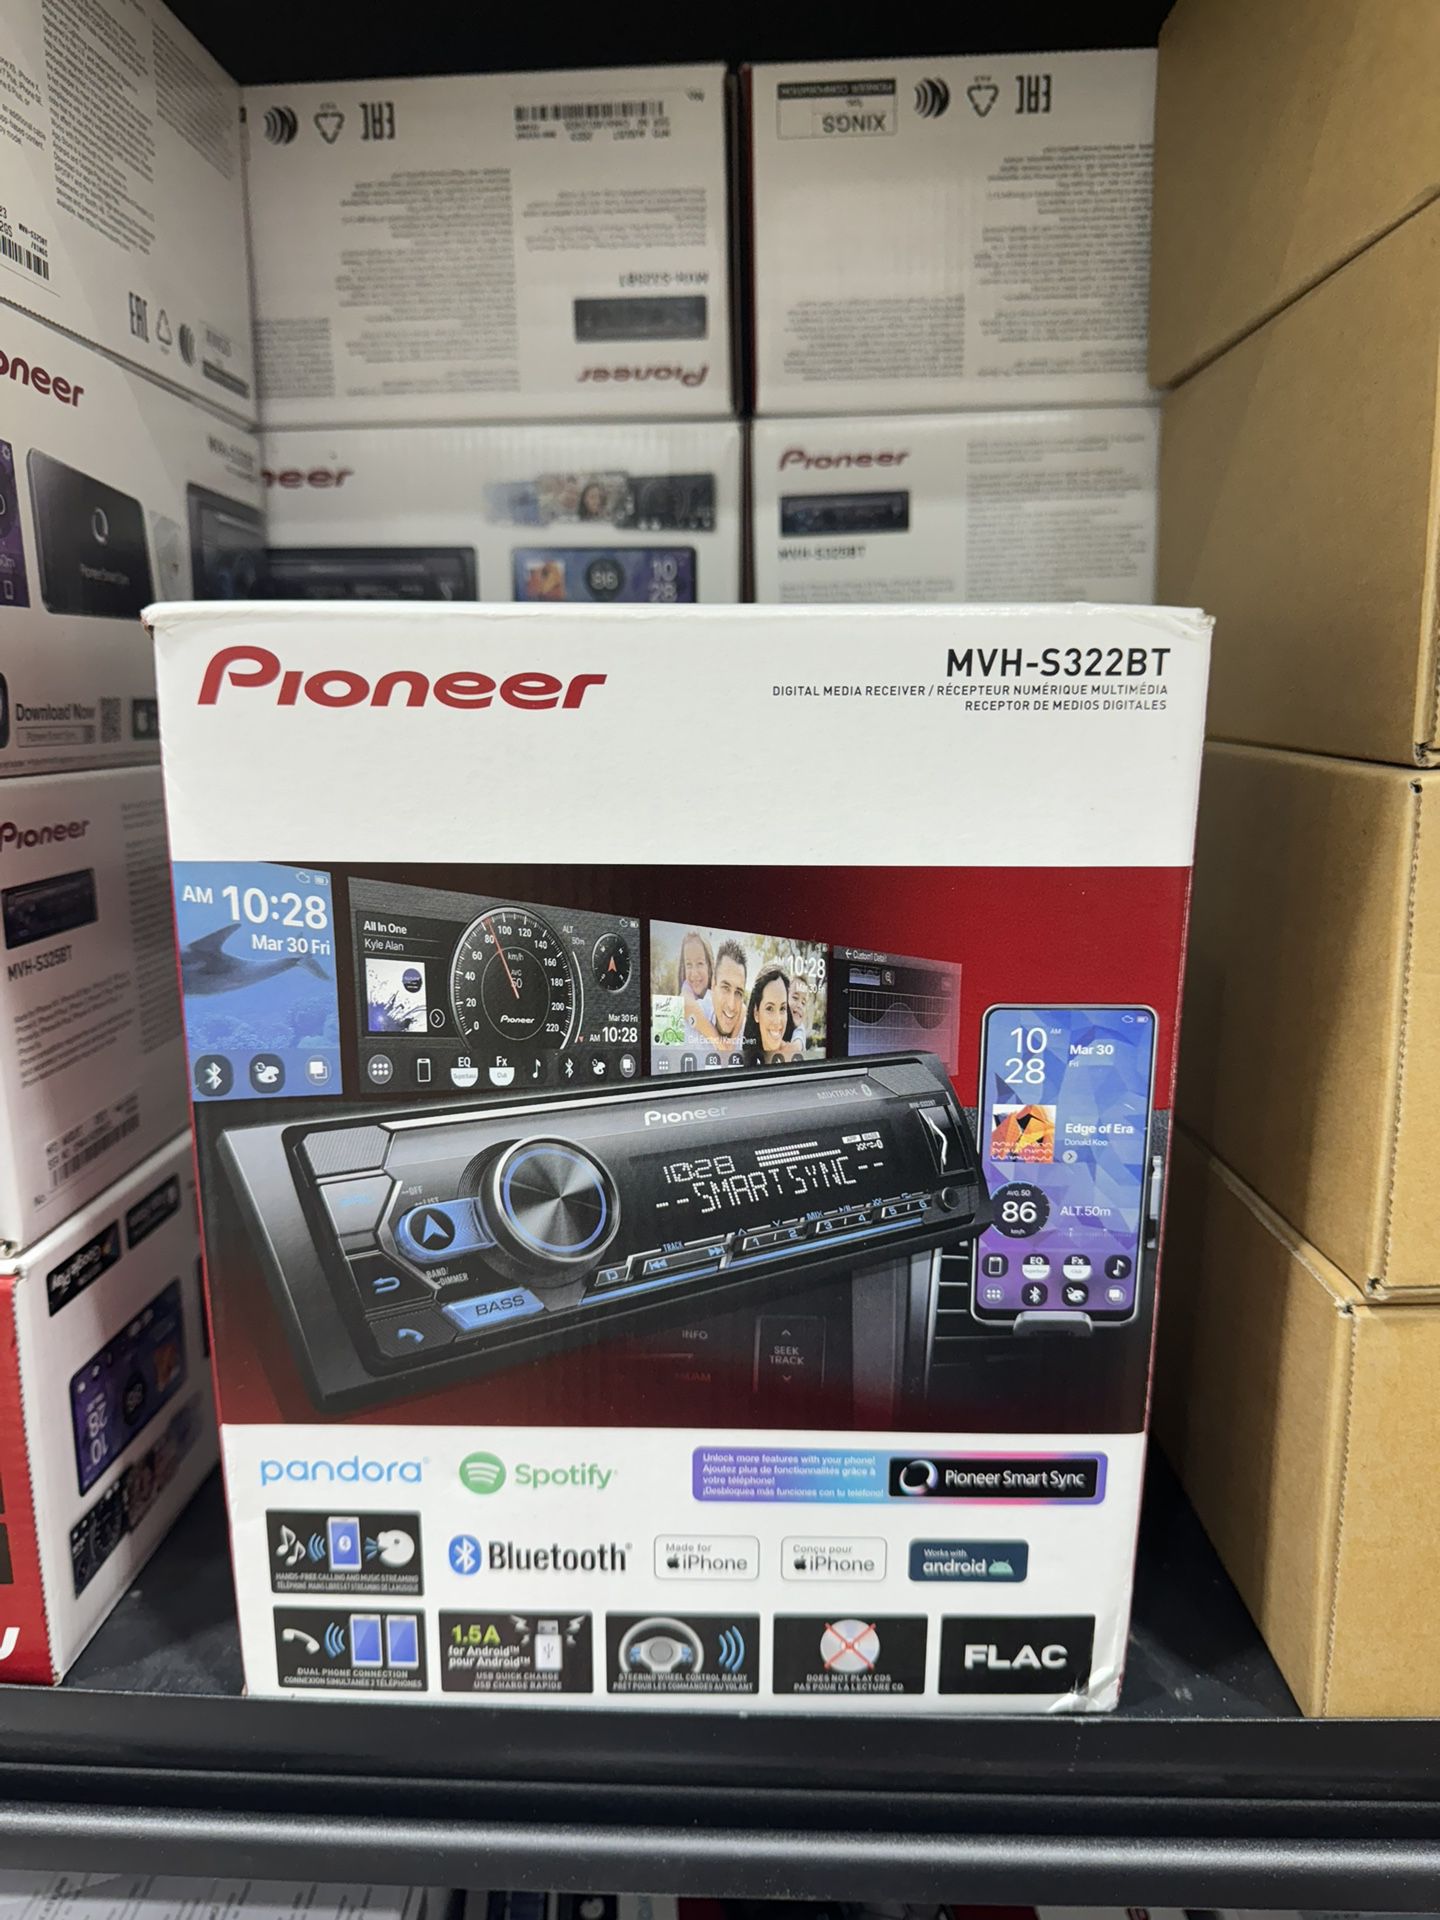 Pioneer Digital Media Receiver (MVH-S322BT)